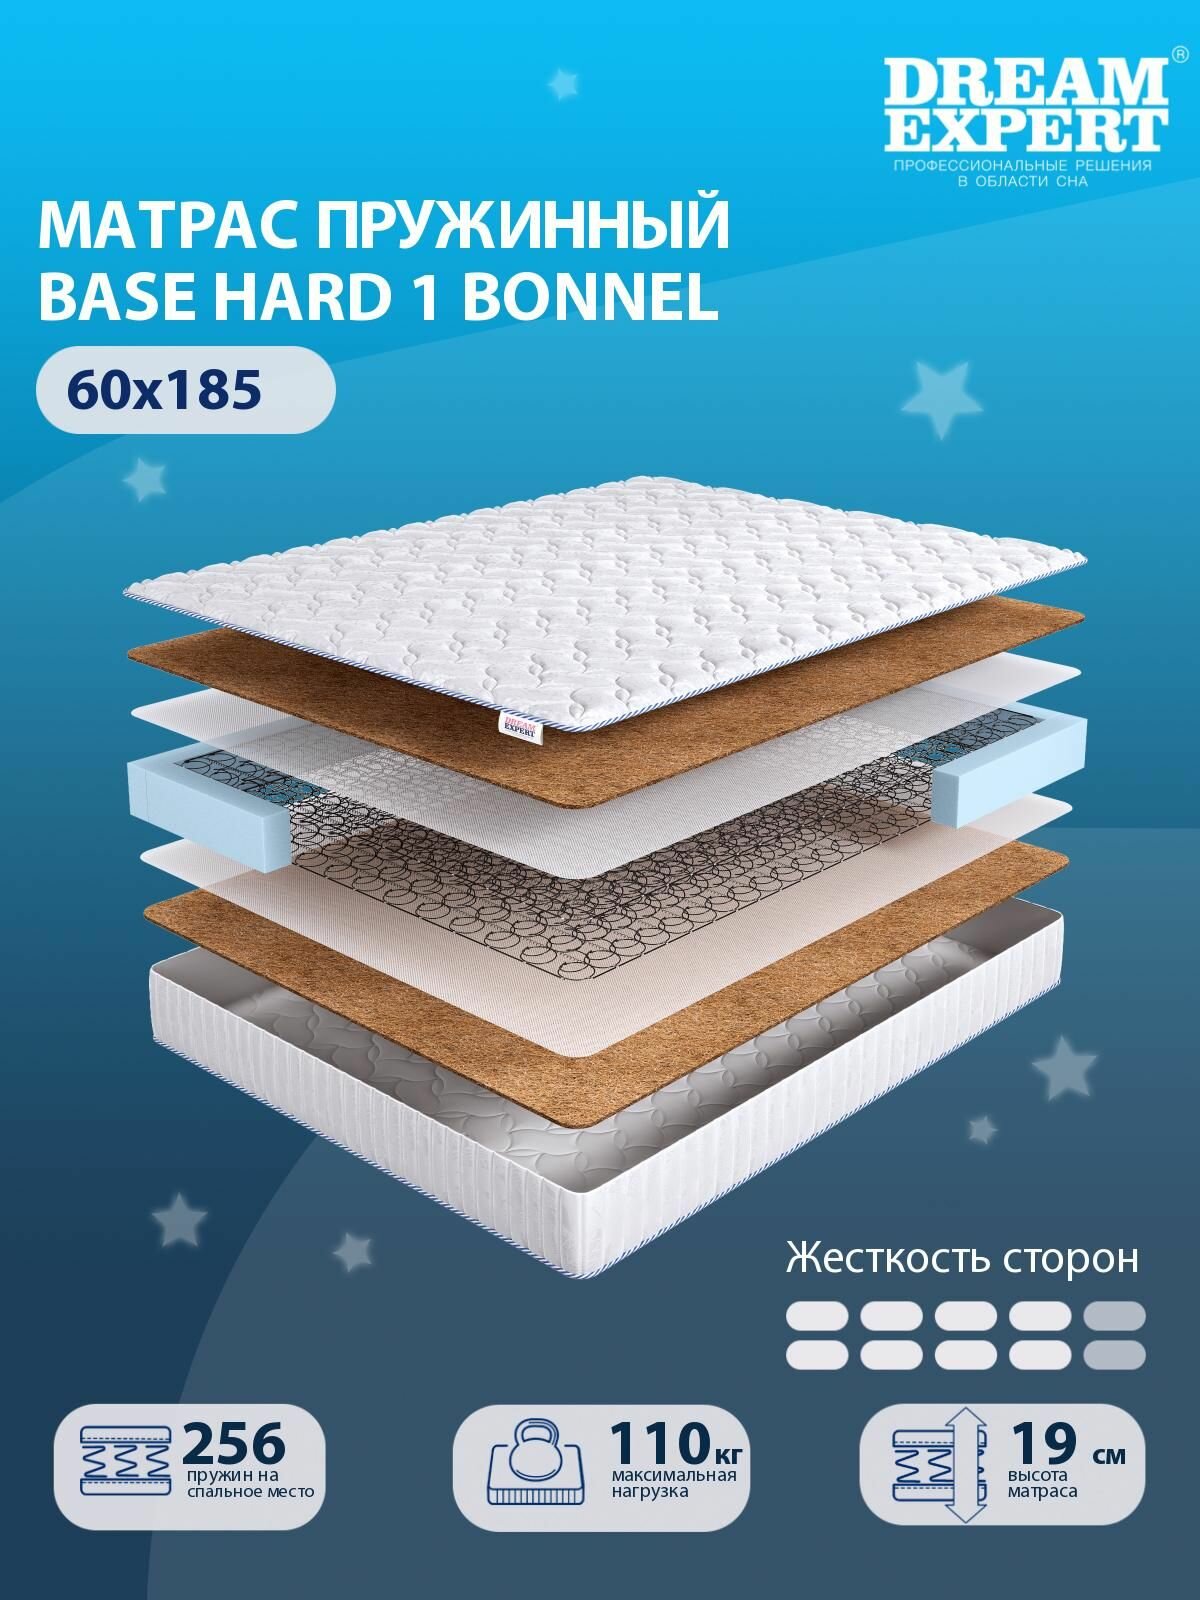 Матрас DreamExpert Base Hard 1 Bonnel выше средней жесткости, детский, зависимый пружинный блок, на кровать 60x185